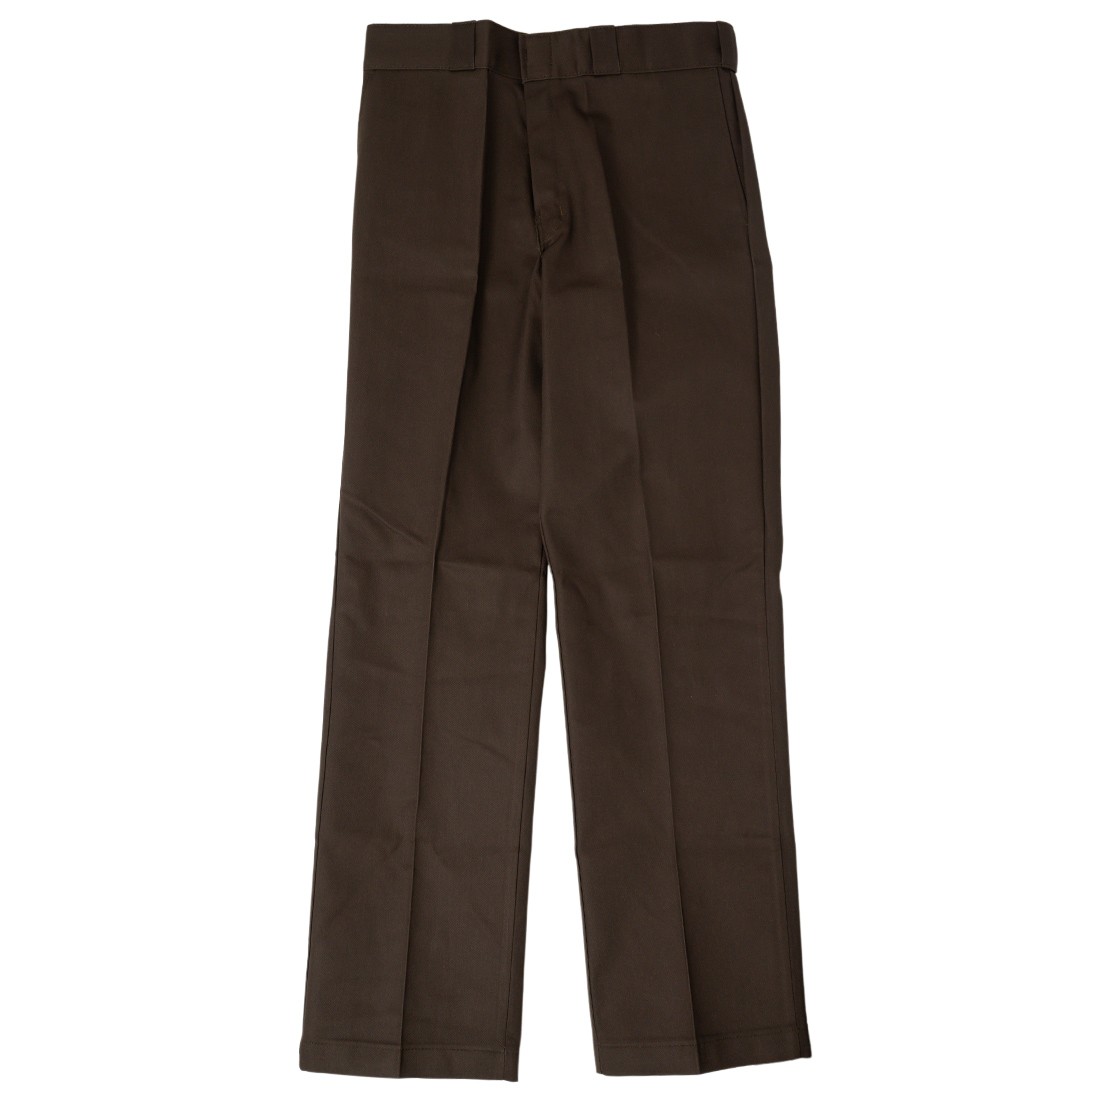 Dickies Men Original Fit 874 Work Pants (brown / dark brown)